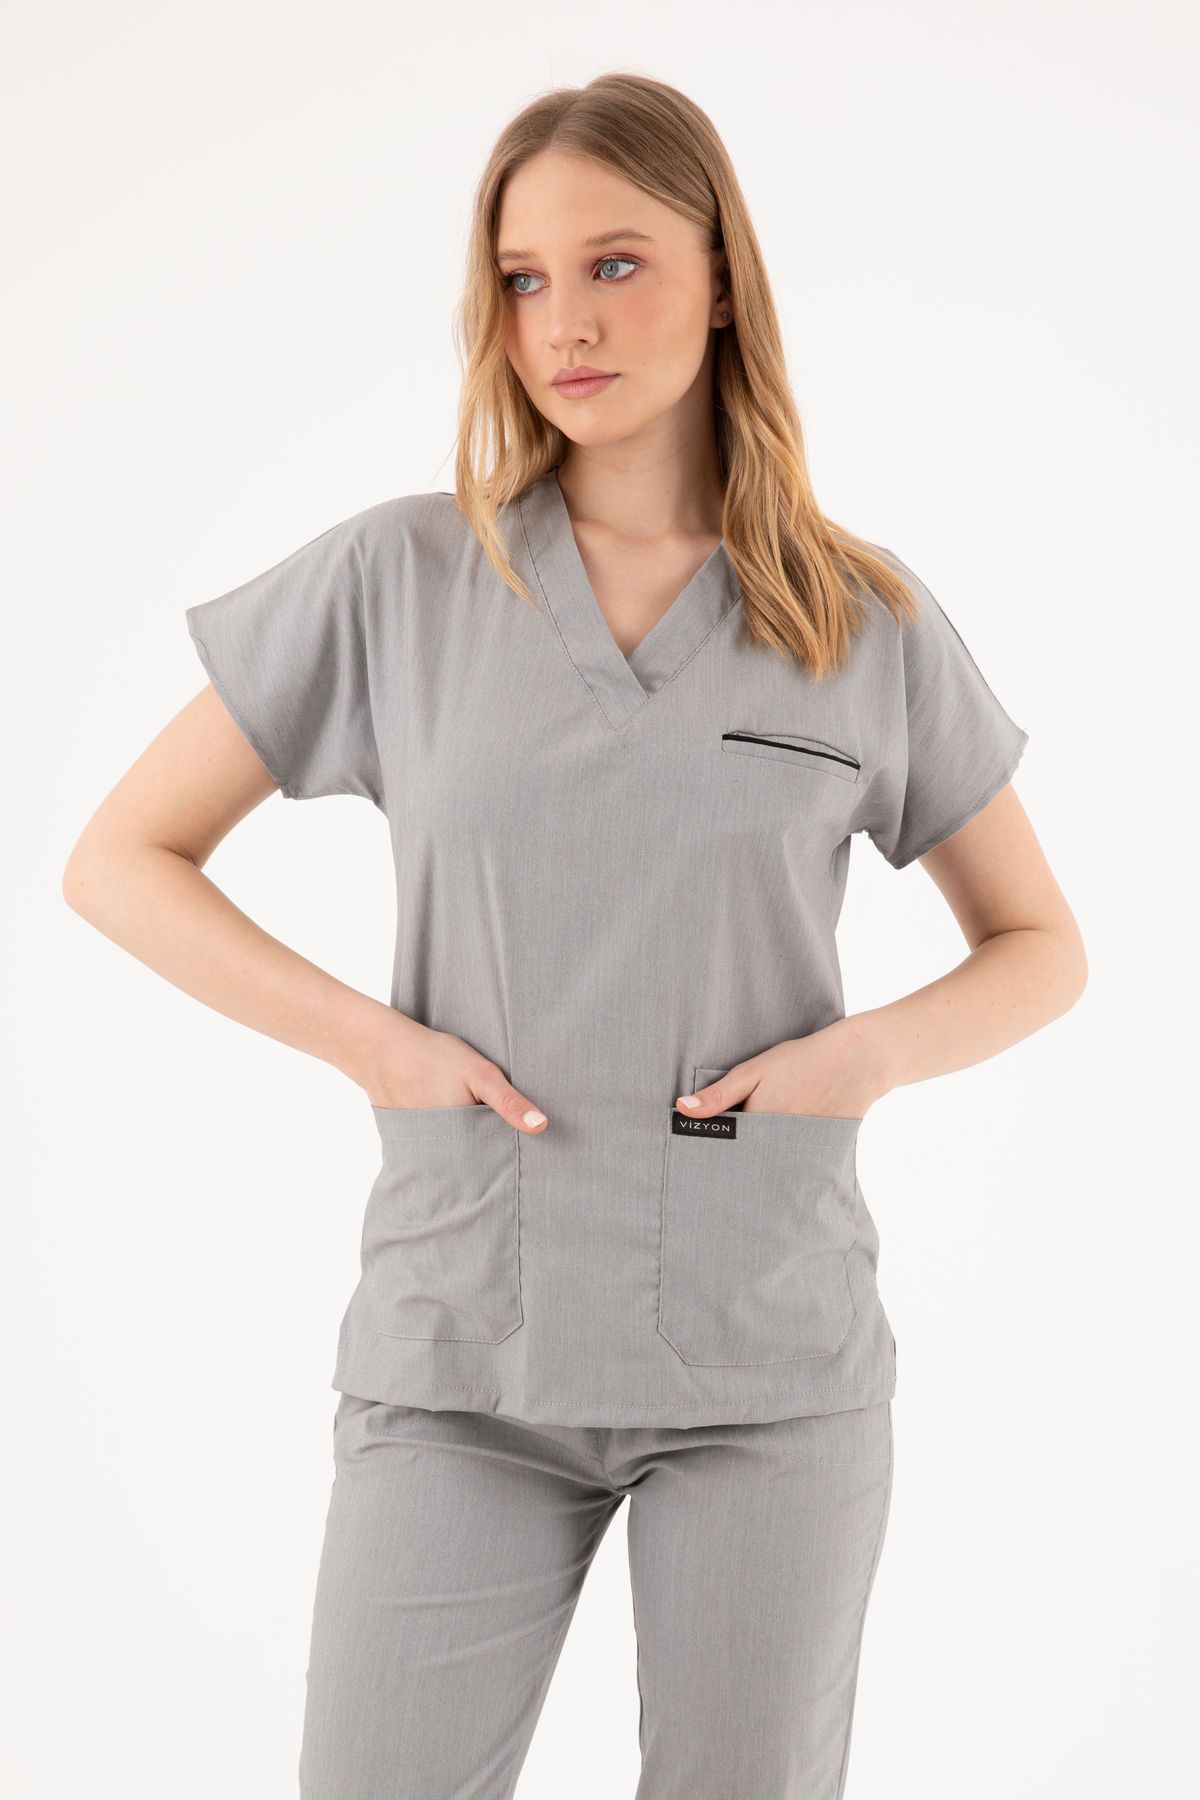 VİZYON UNIFORM Premium Likralı Fırçalı Gri Rengi Hemşire Forması Cerrahi Takım, Scrubs Takım (UNİSEX)